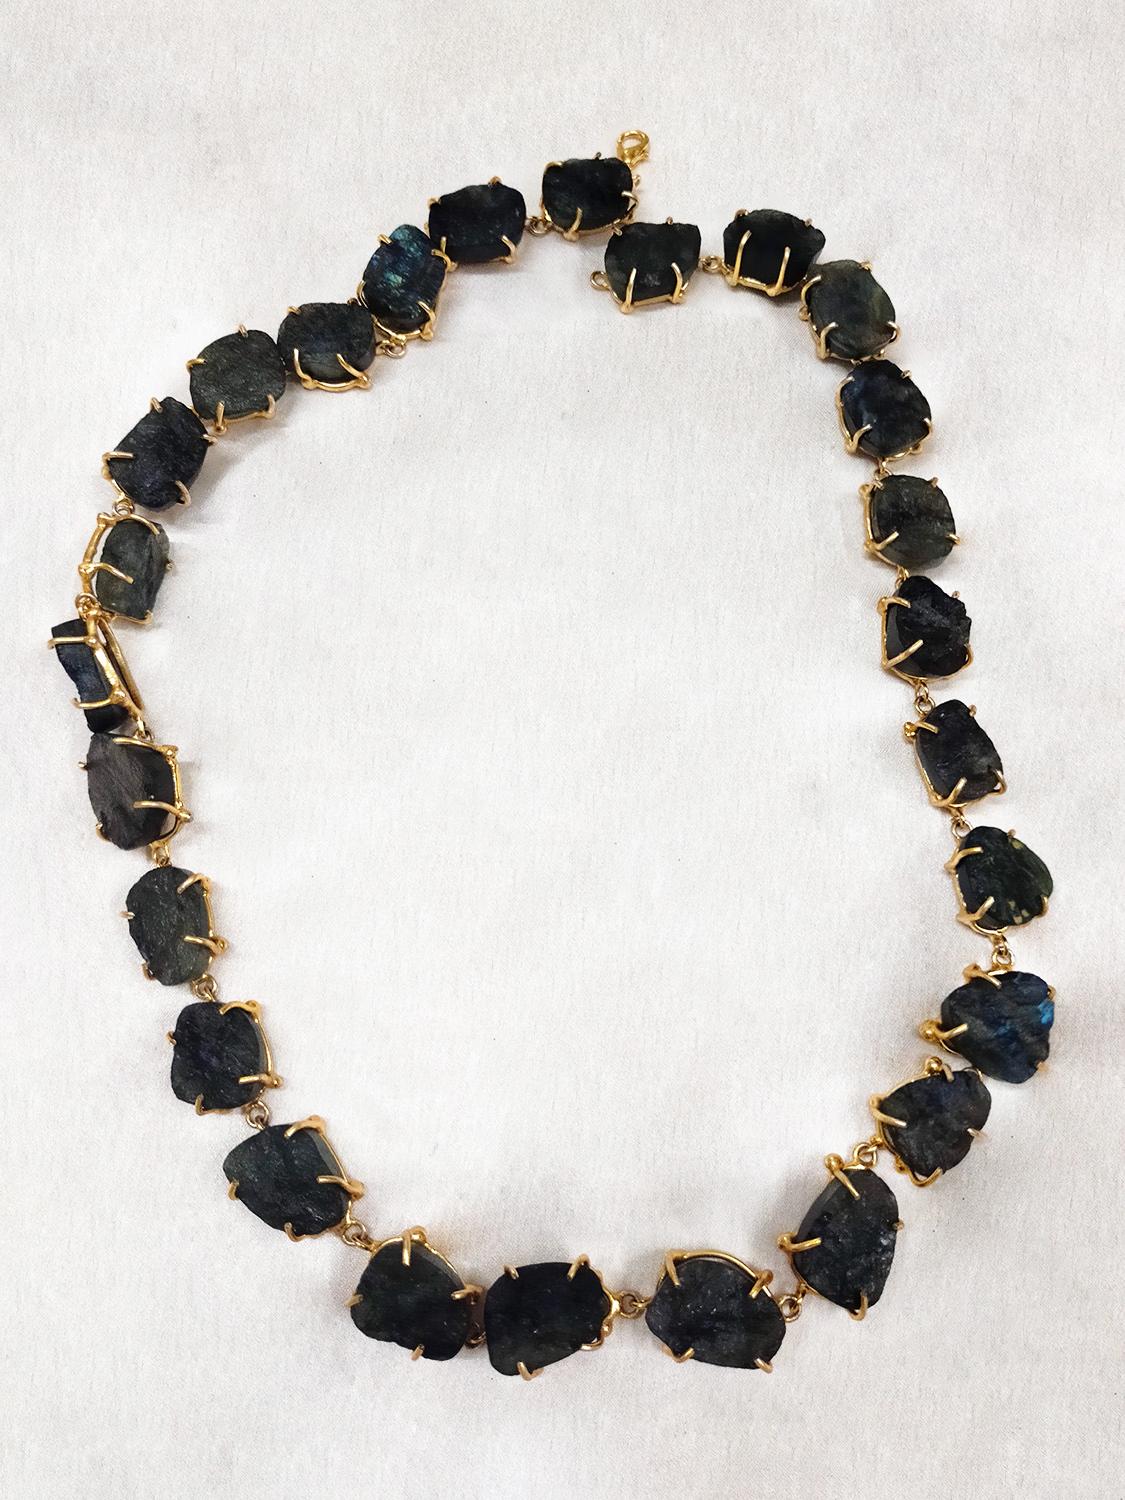 Buy Chunky Black Stone Necklace online in Delhi